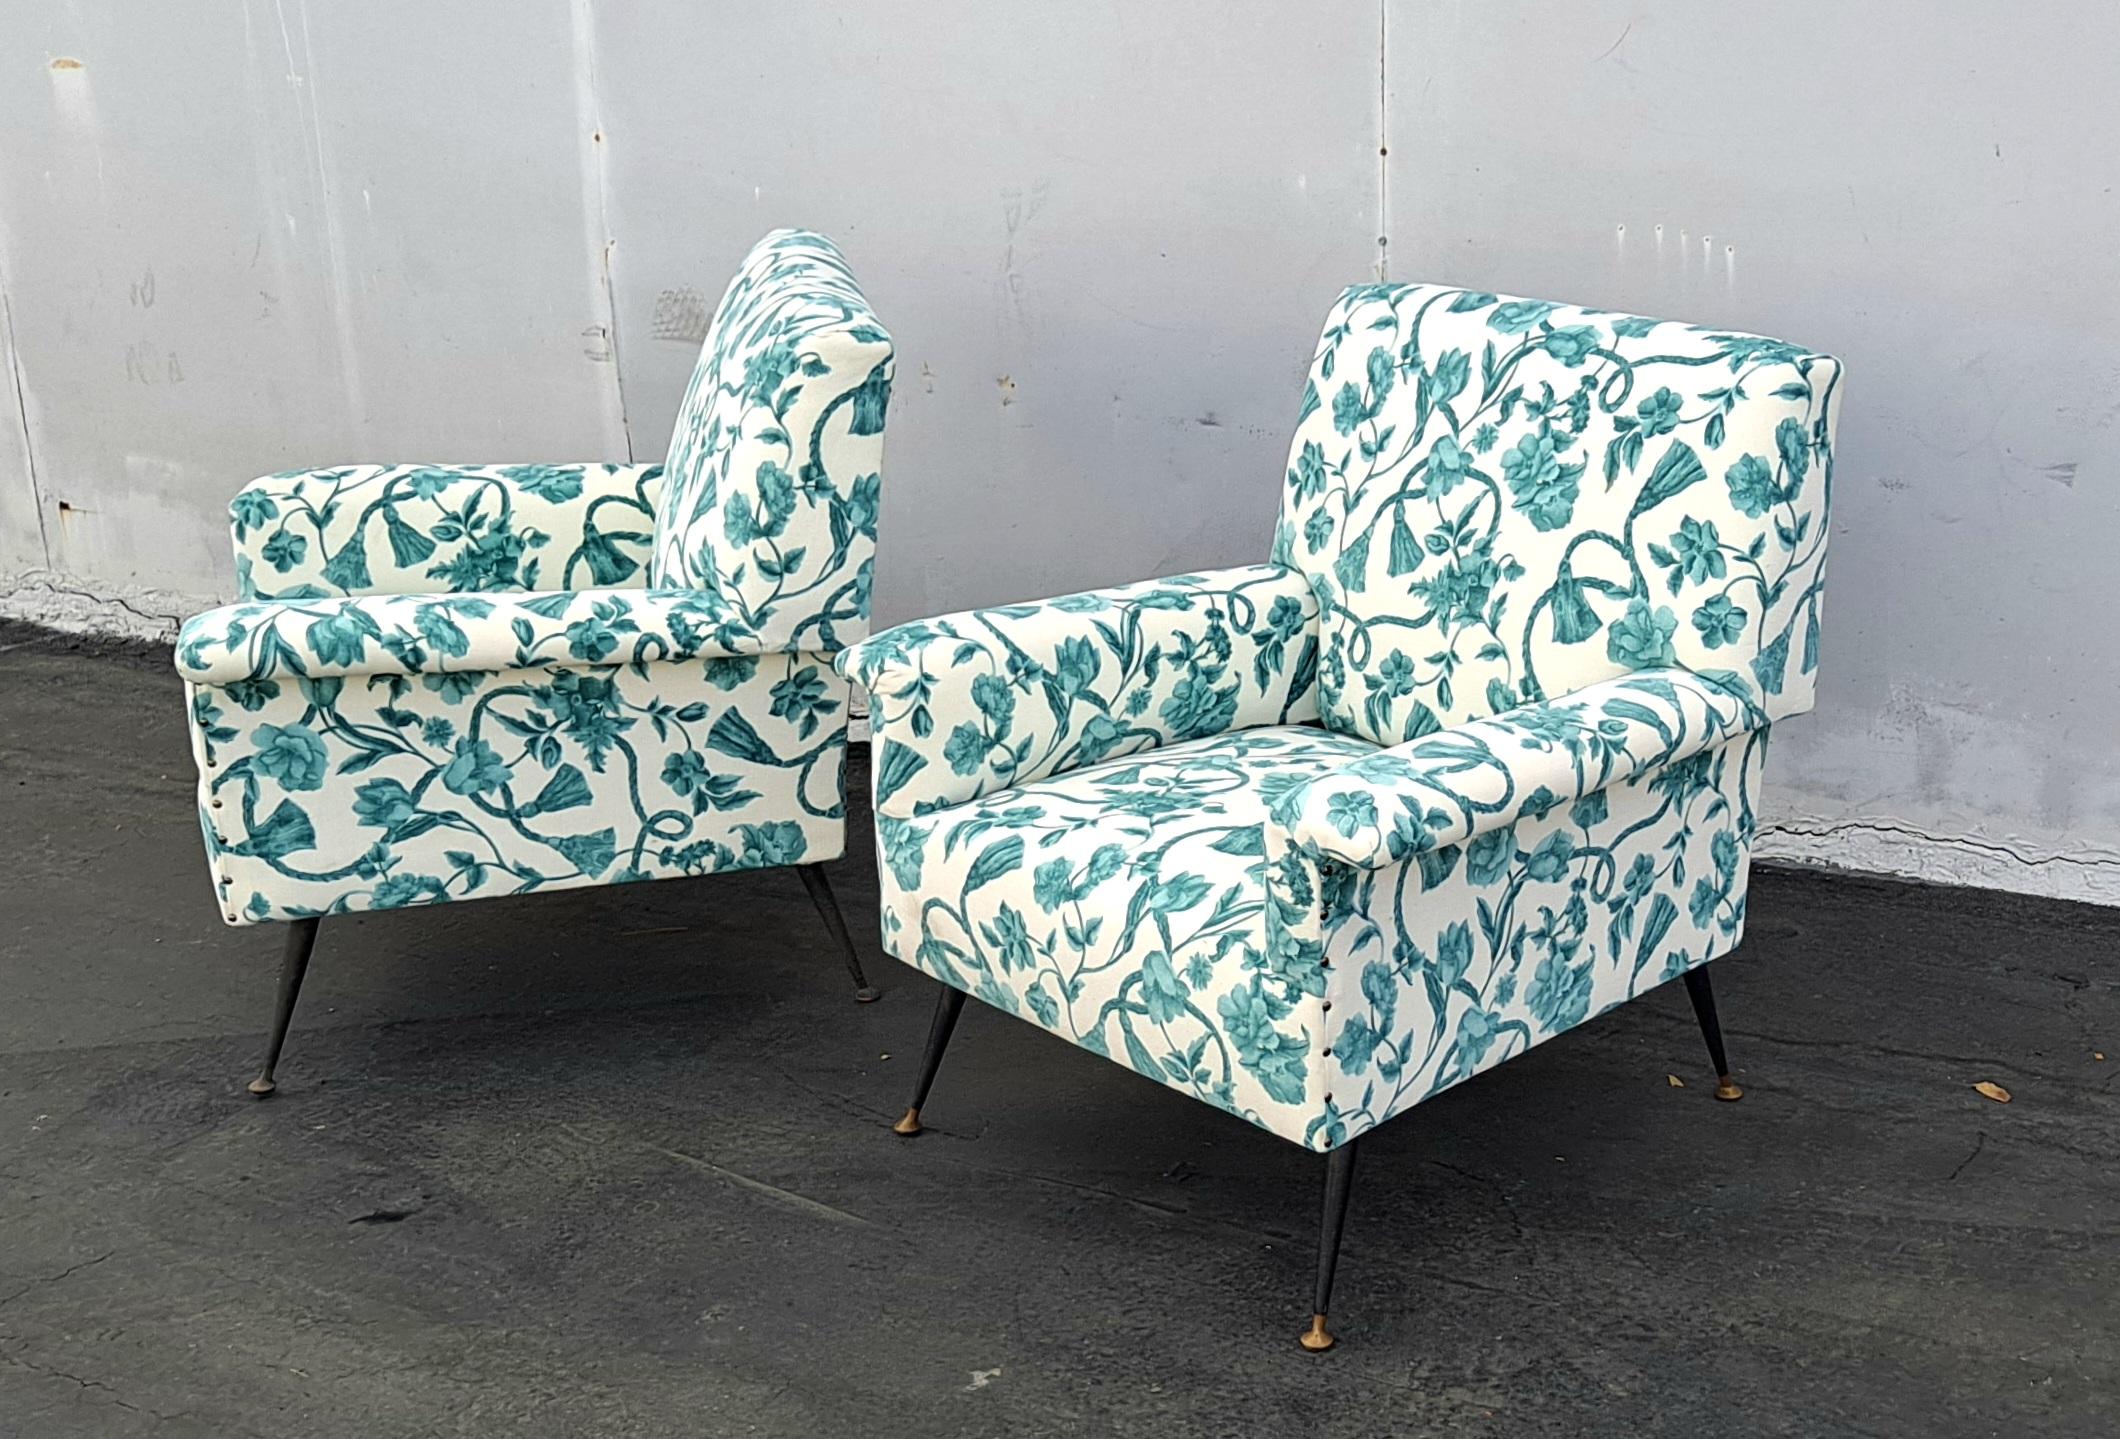 Paar Sessel aus den 1960er Jahren mit leicht verstellbarer Lehne  Armlehnen, gepolstert mit Schaumstoff und gepolstert mit neuem Stoff, Beine aus schwarzem Metall mit Messingfüßen.